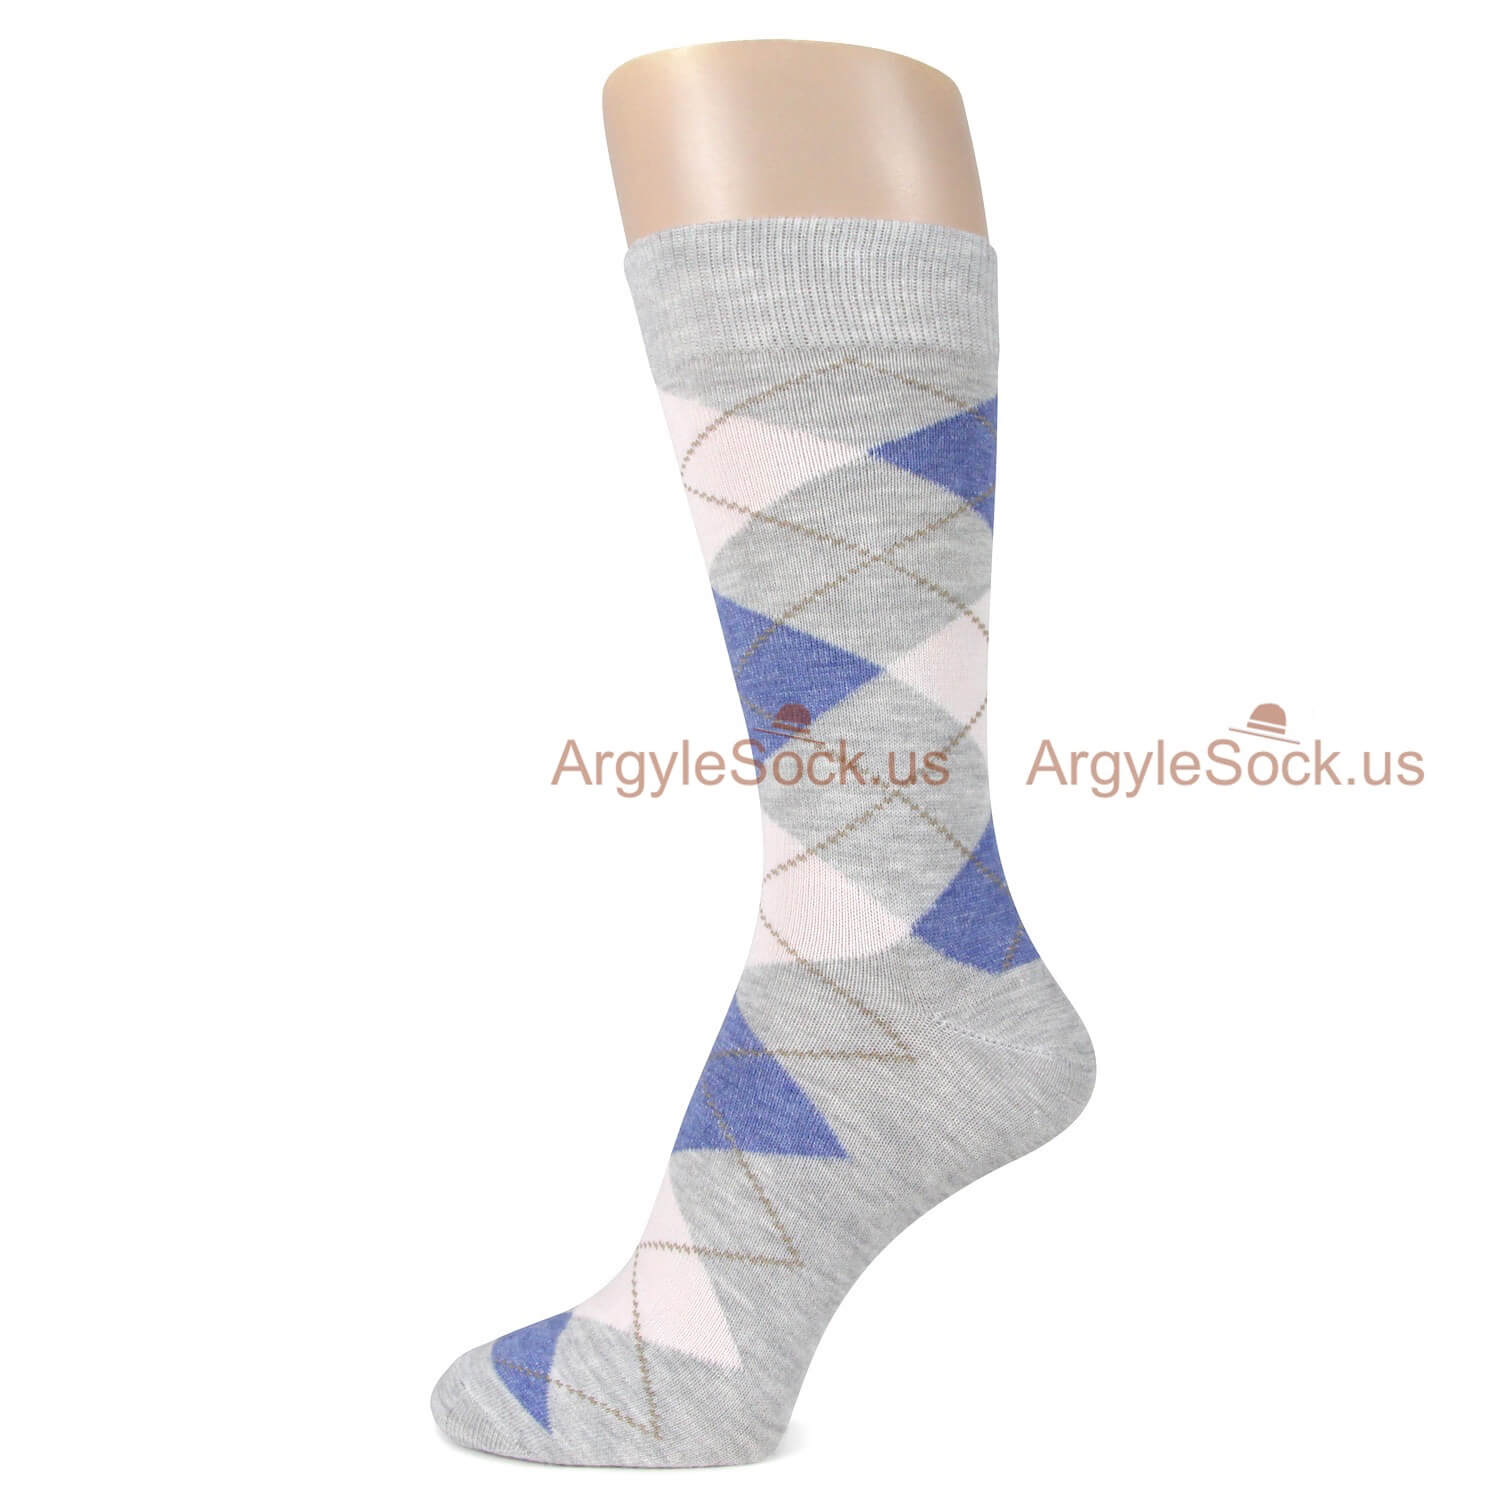 Grey Blue and White Argyle Socks For Men